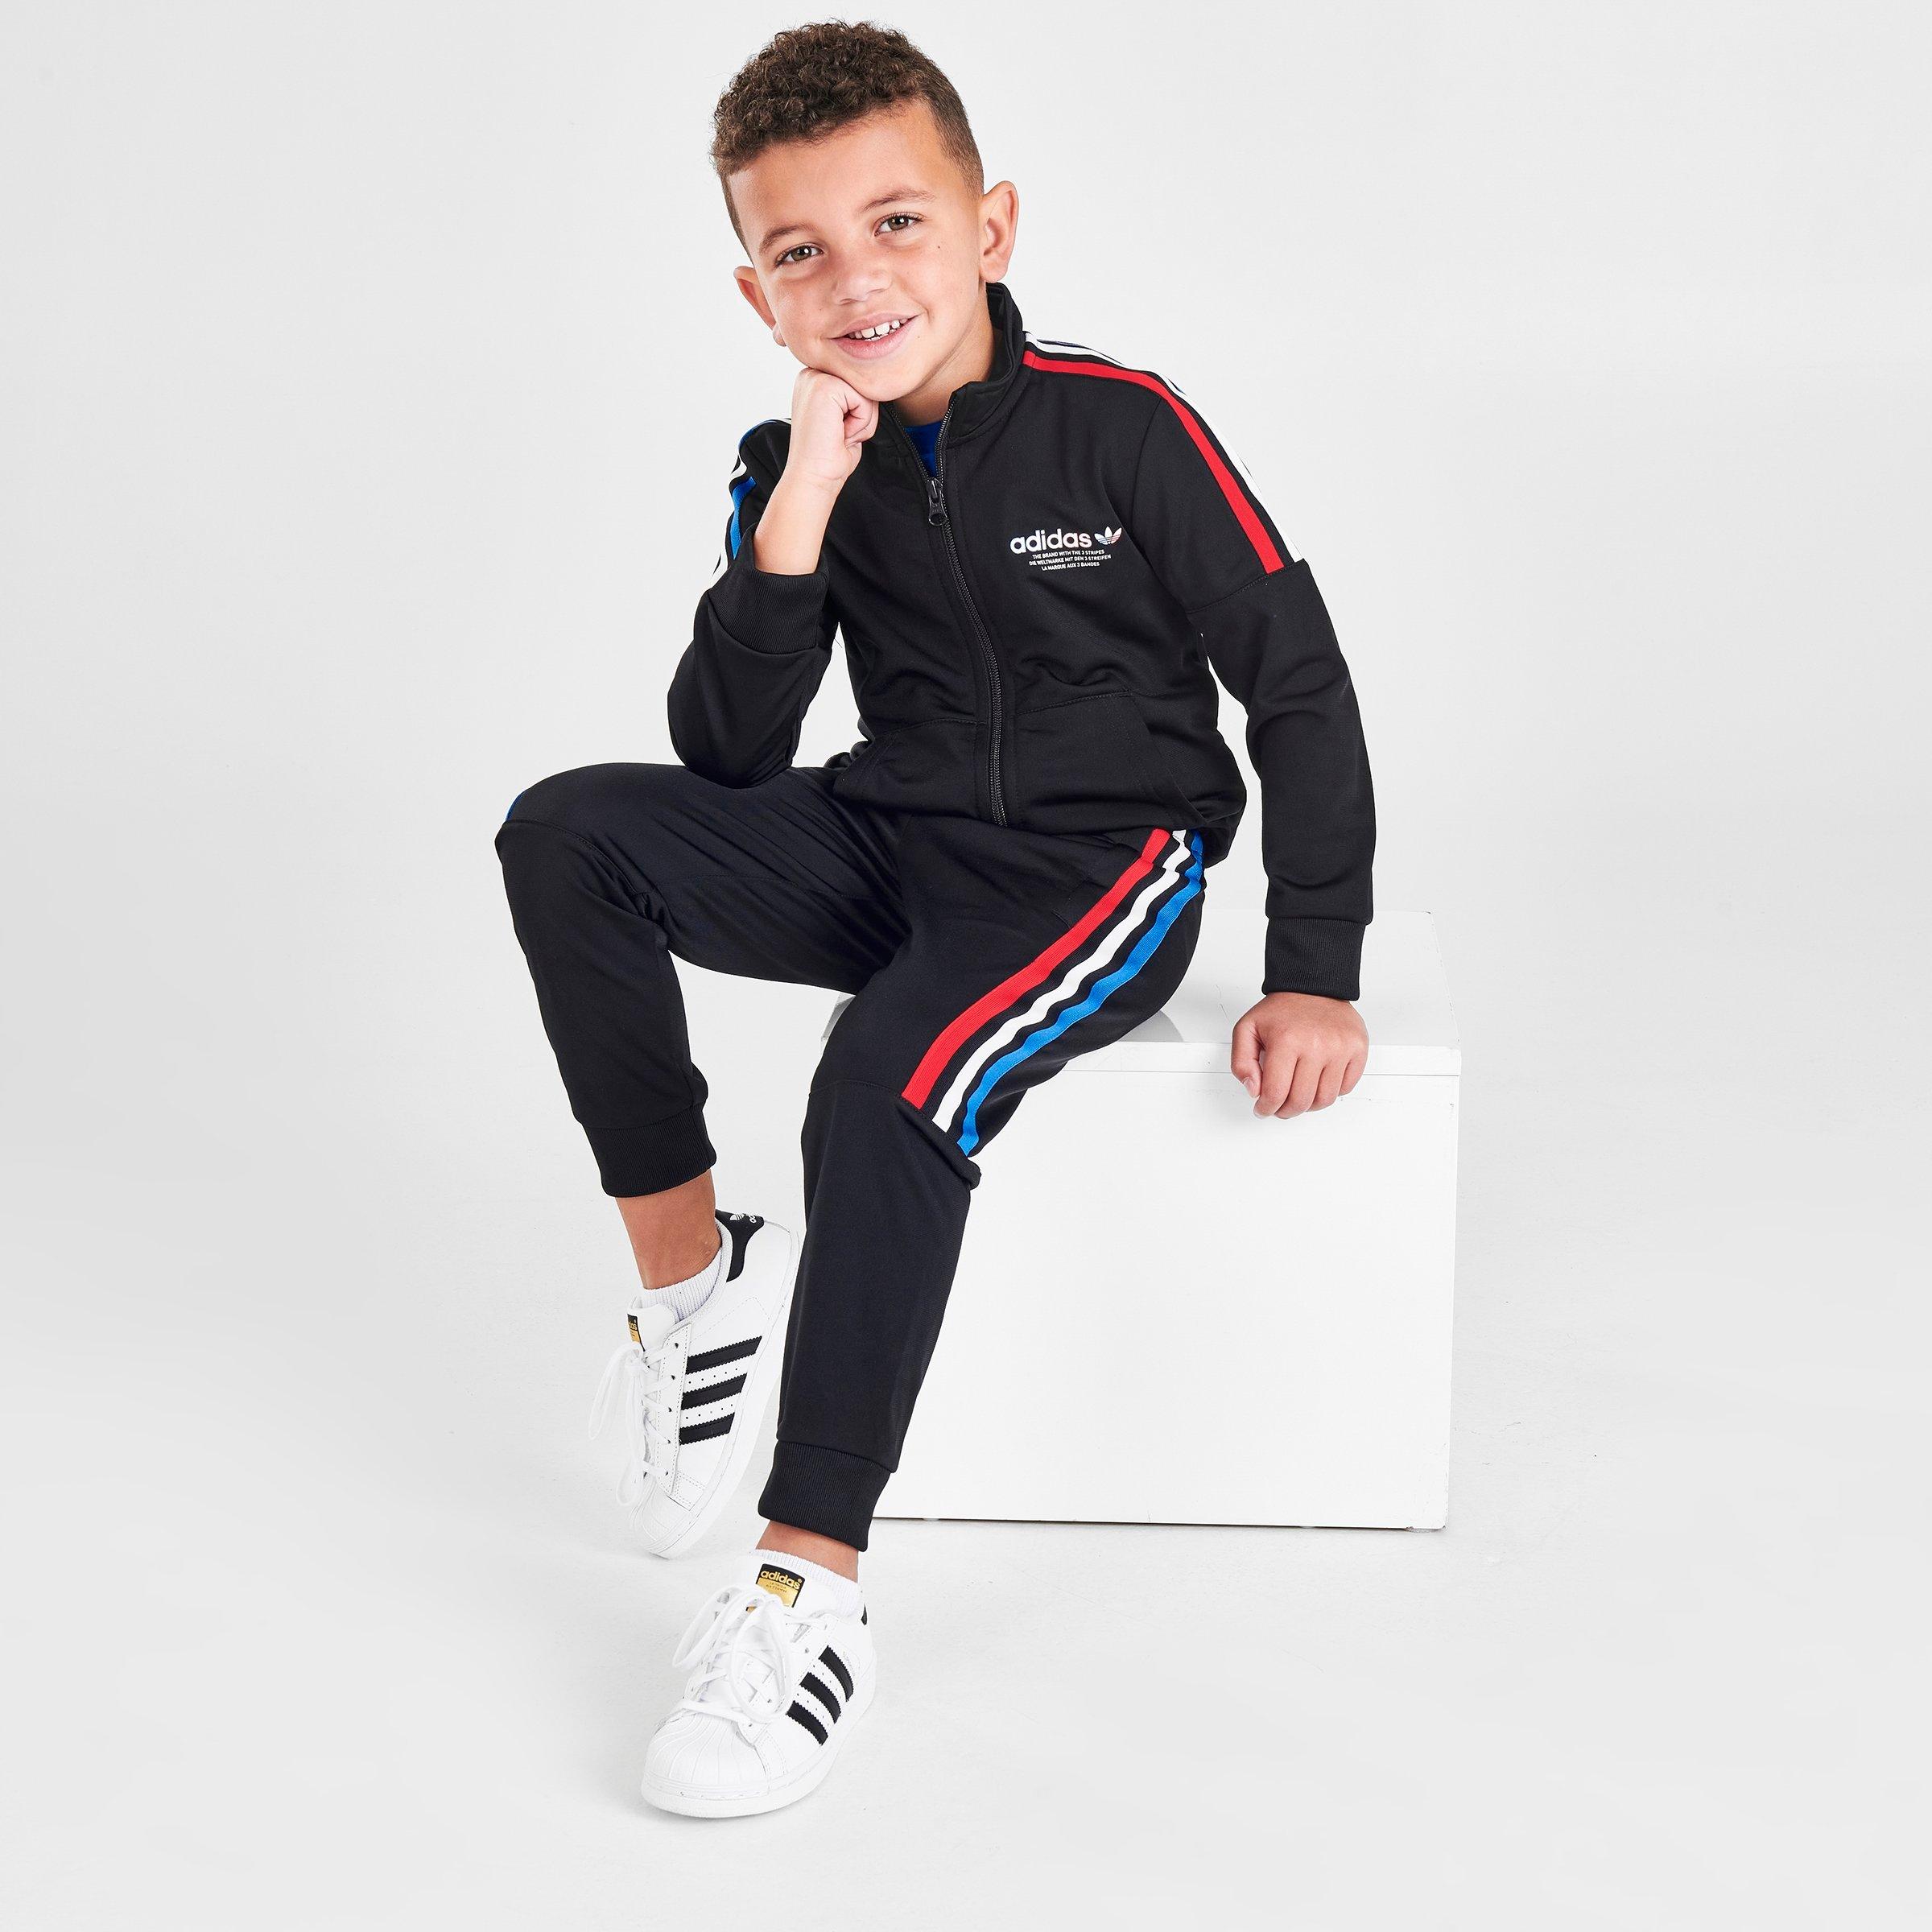 adidas toddler jogging suit